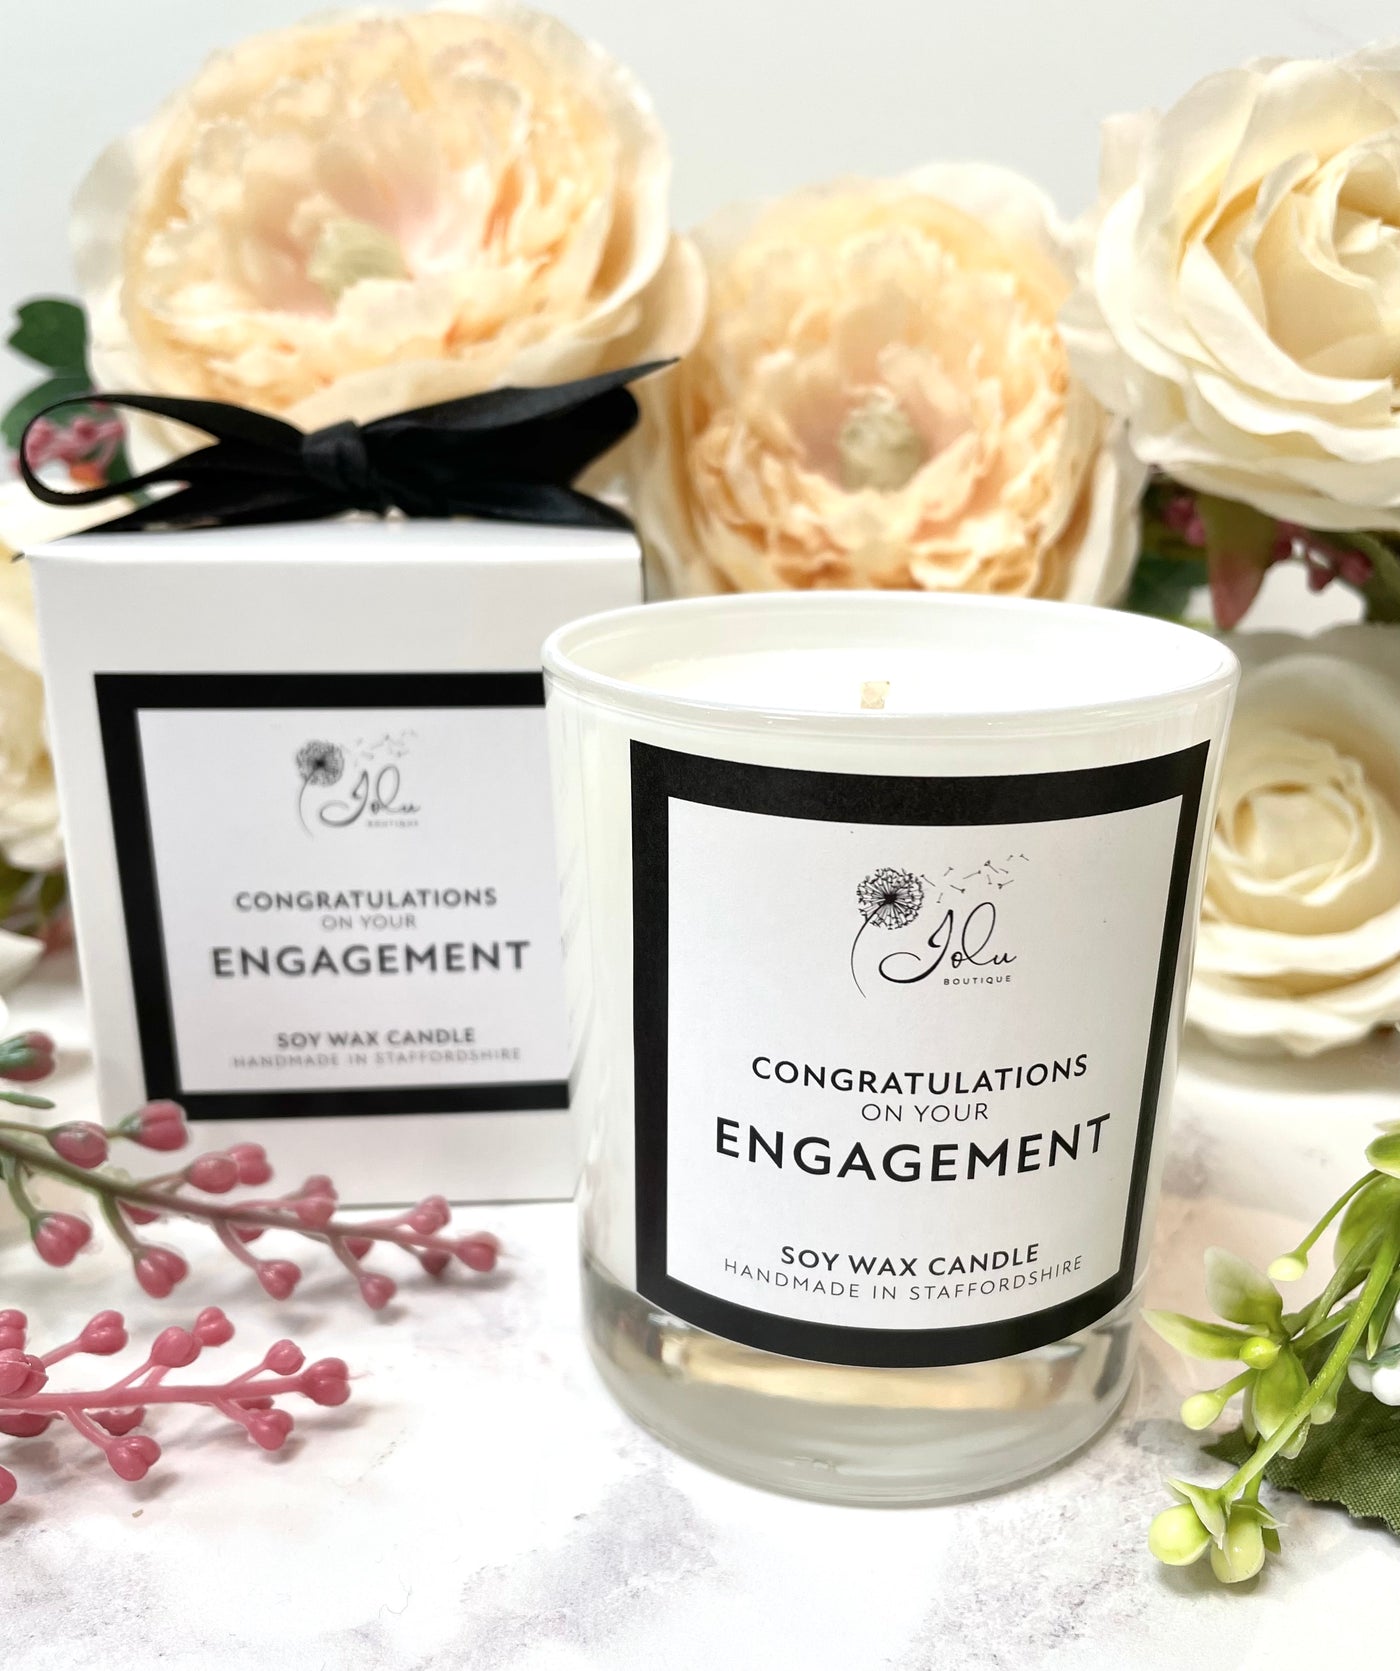 Jolu Boutique Sentiment Candle - Engagement